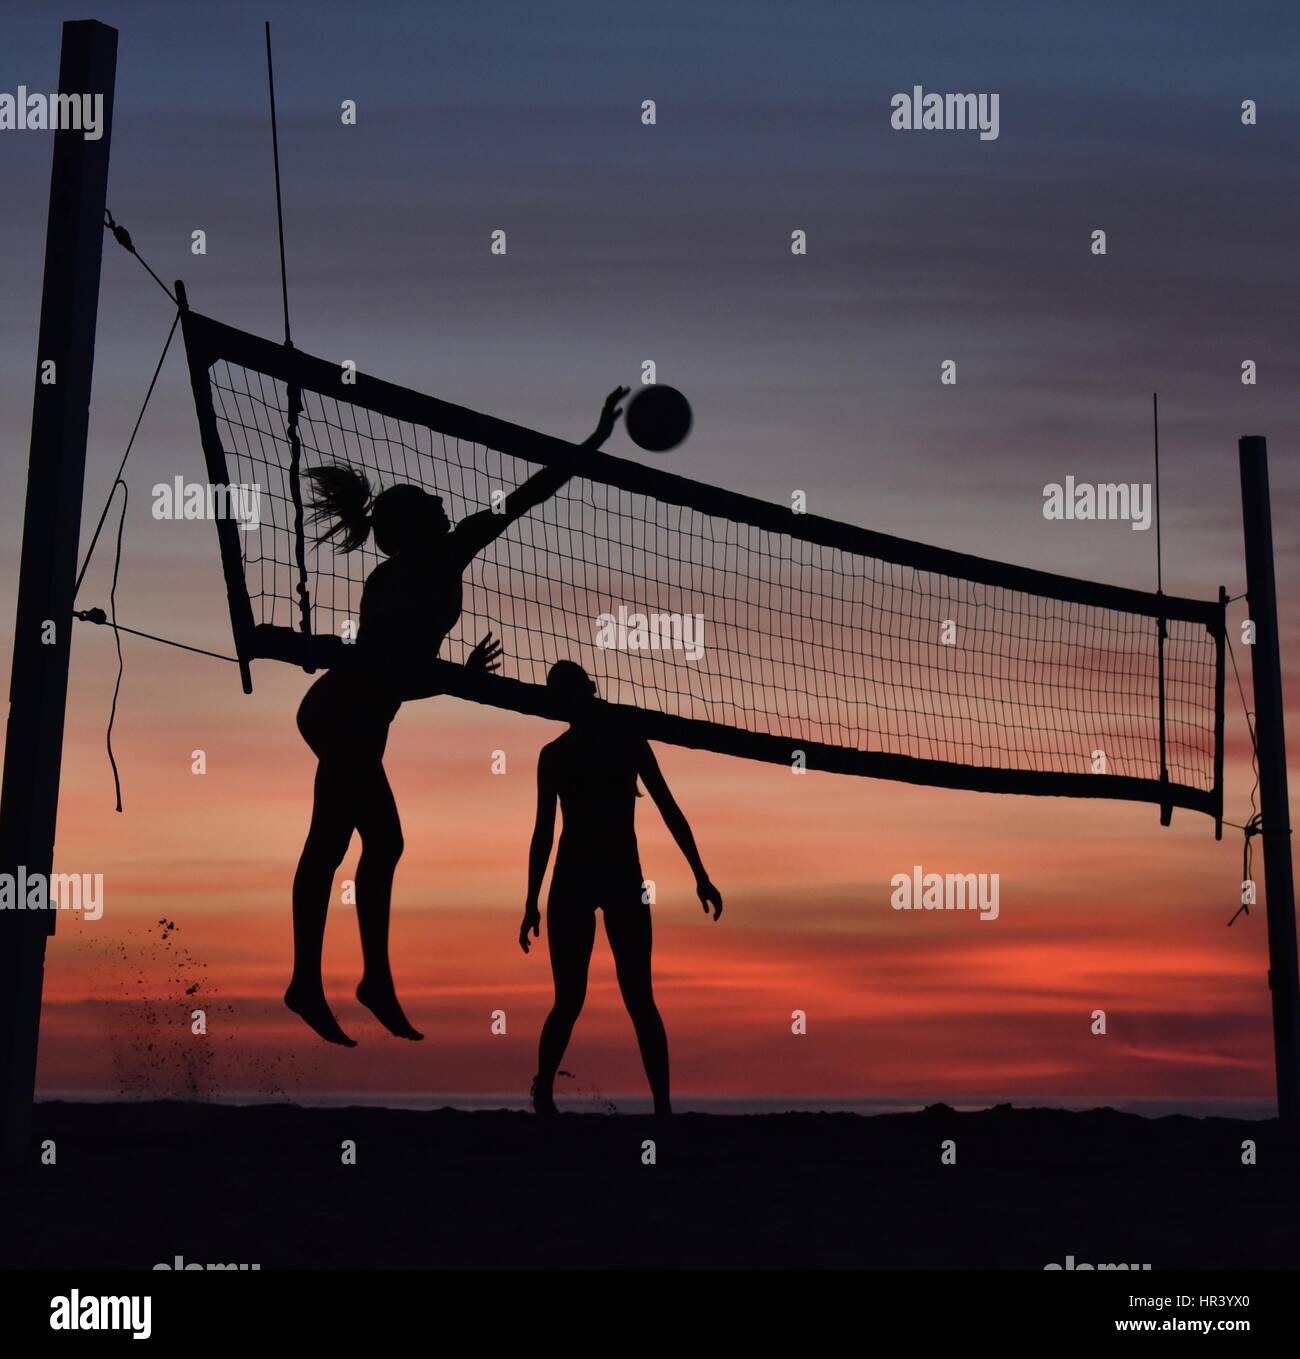 Silhouettes de joueurs de volley-ball féminin volley-ball pratique sur une plage au coucher du soleil à Mission Beach, San Diego, Californie. Banque D'Images